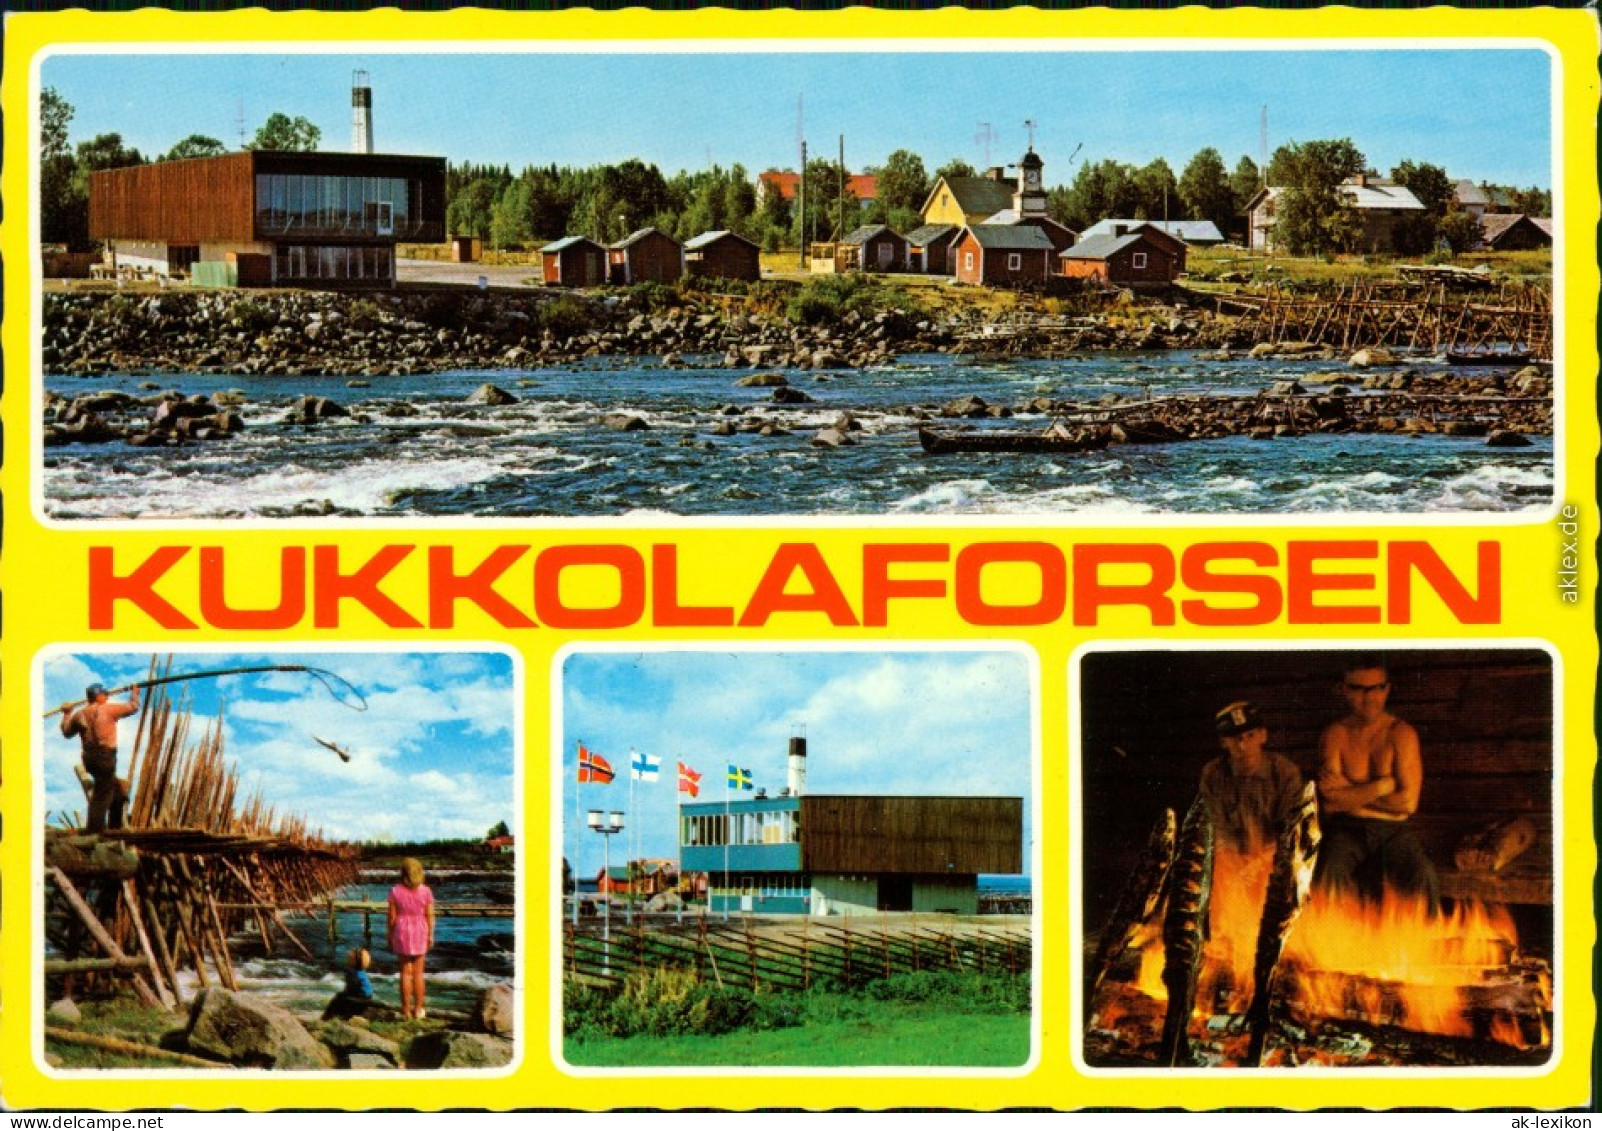 Kukkolaforsen Siedlung Am Fluss, Fischer Am Holzdamm, Ortsmotiv, Lagerfeuer 1988 - Finnland